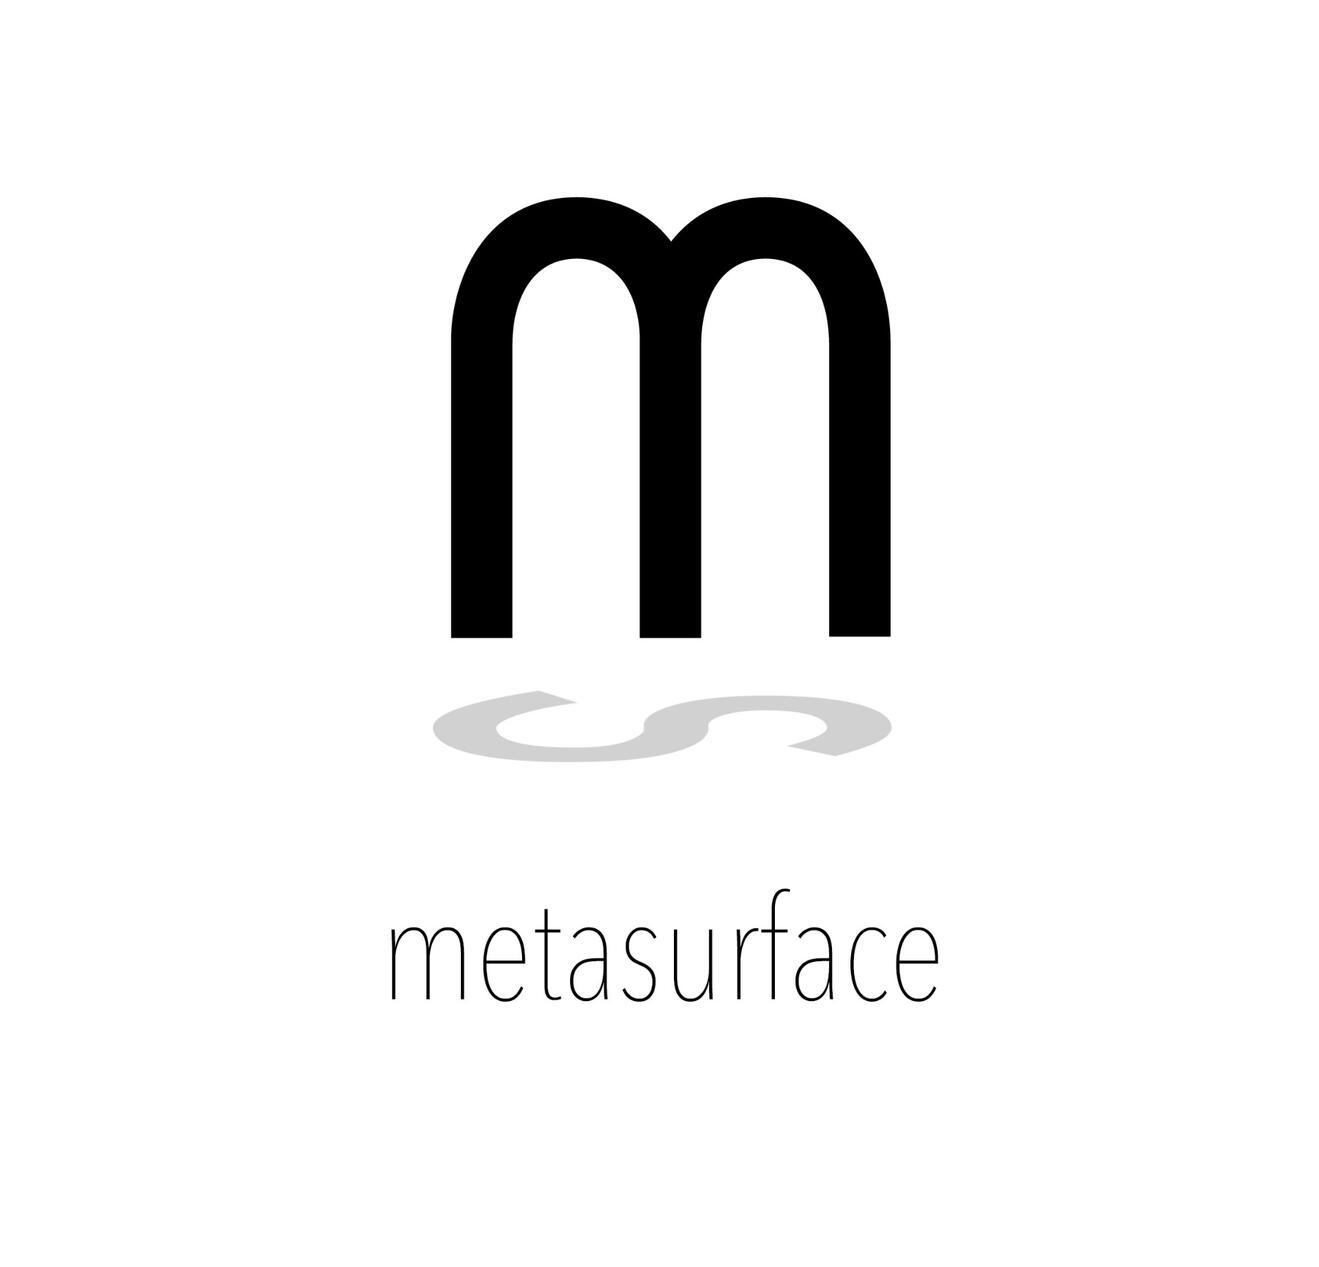 metasurface